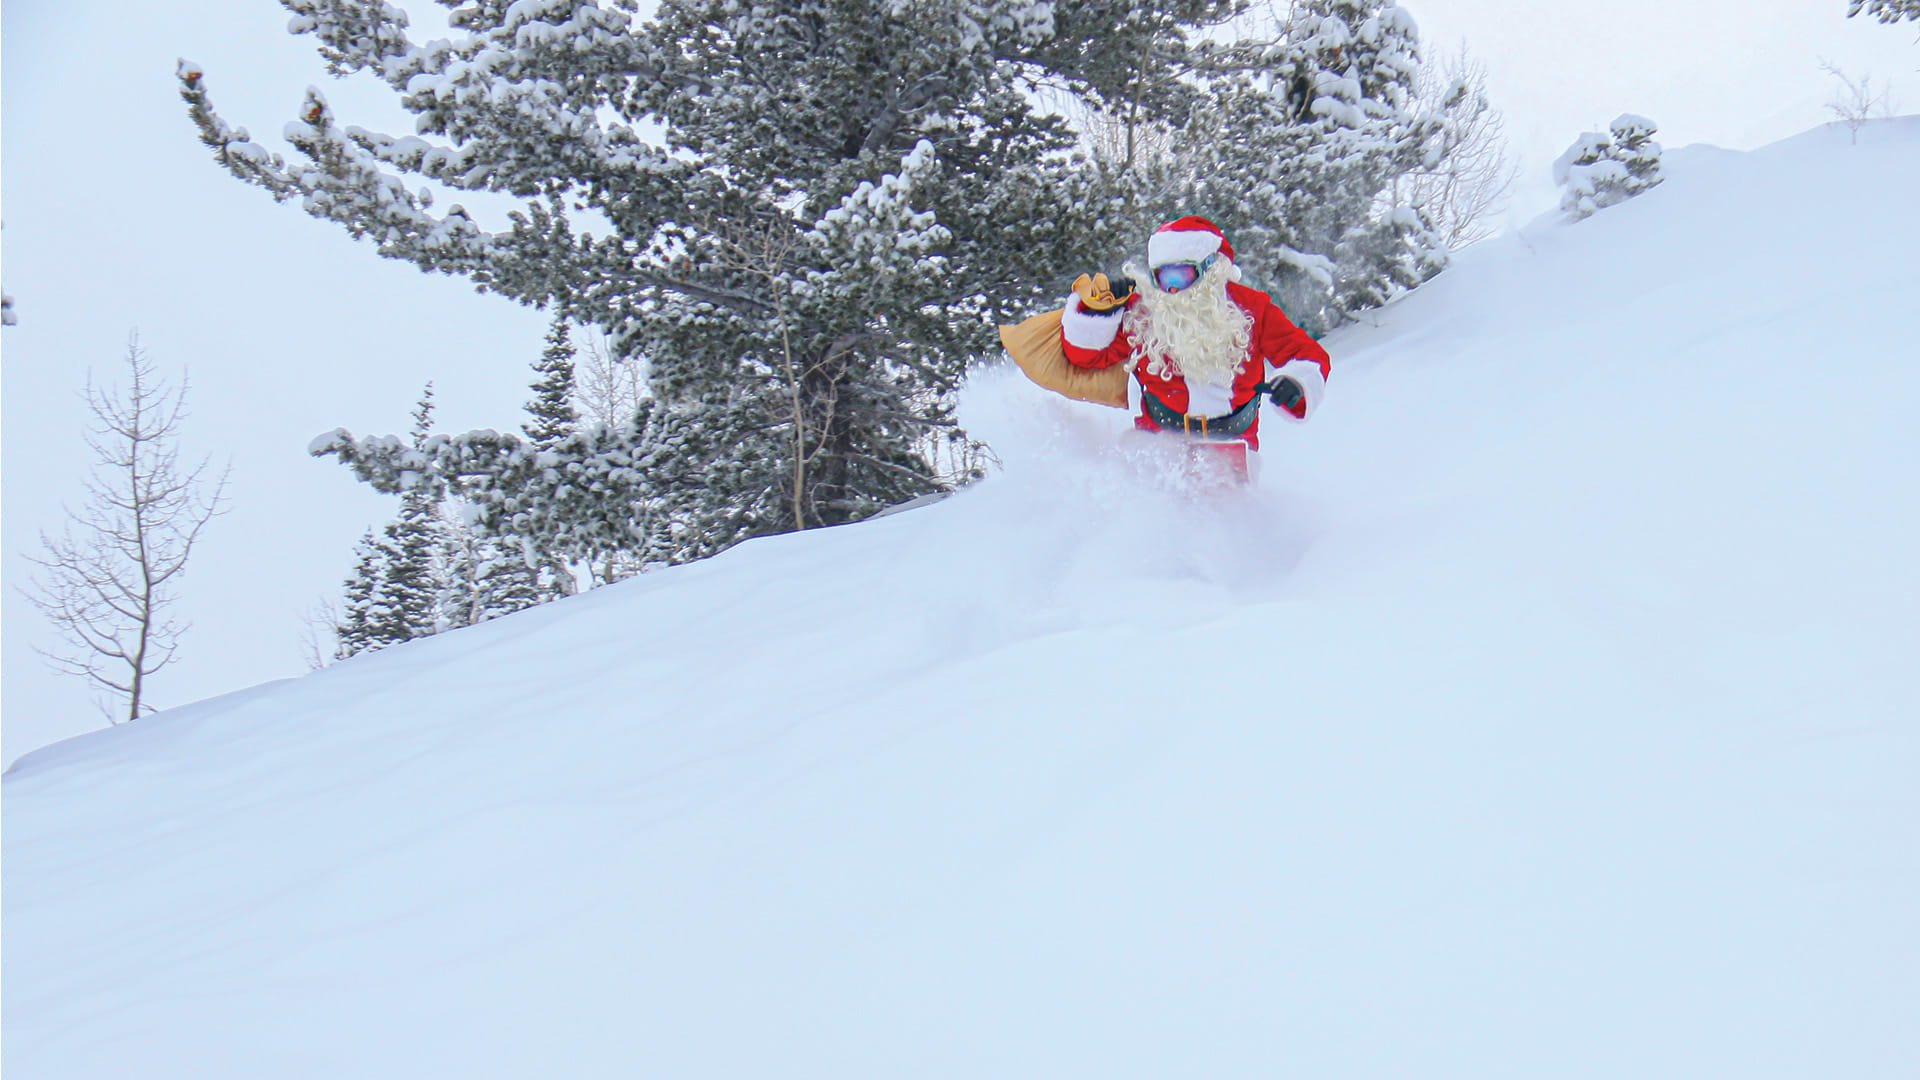 Santa skiing at Solitude